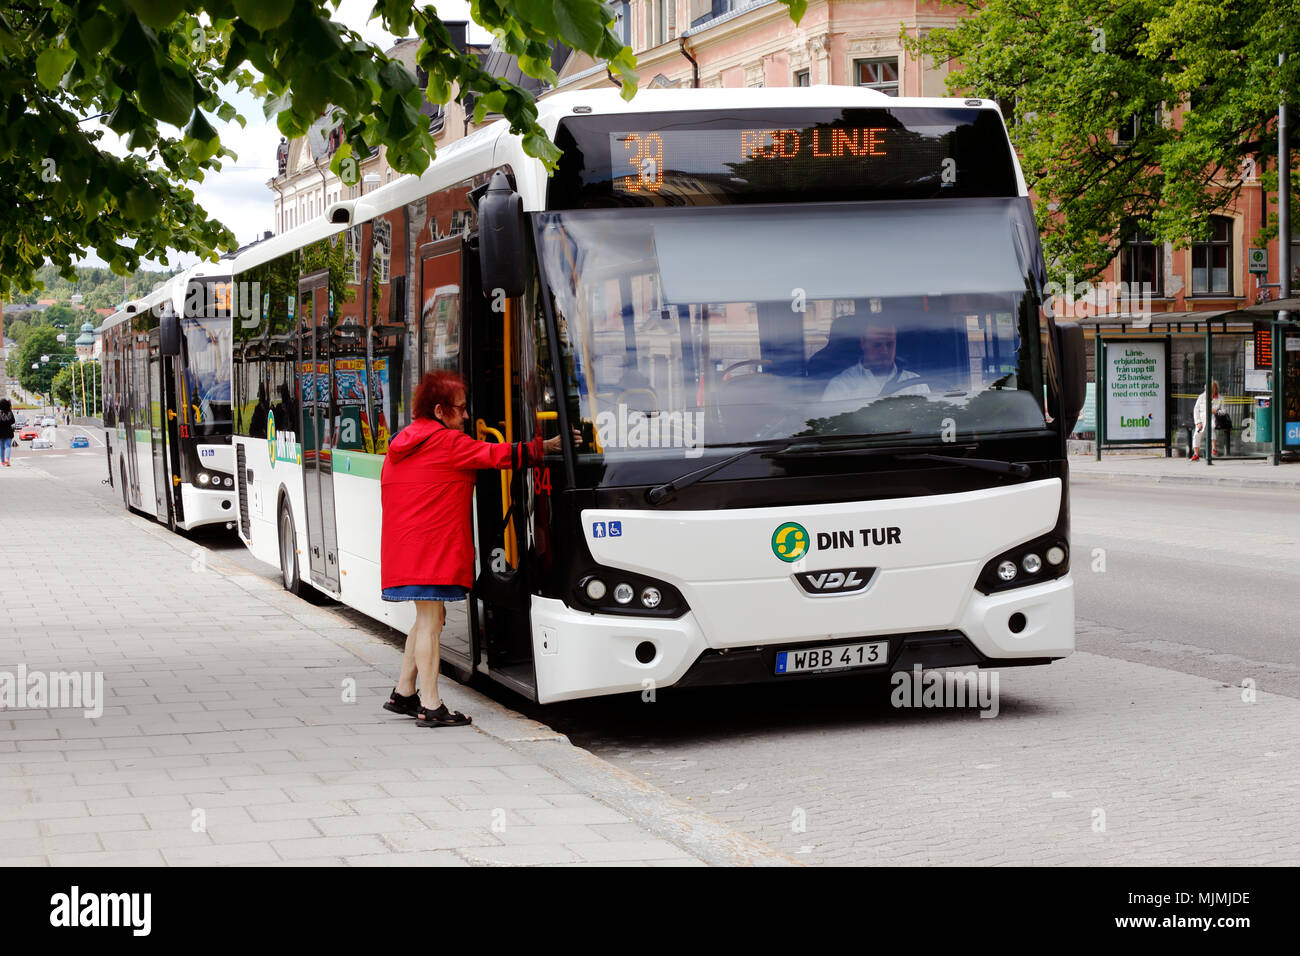 Harnosand, Suède - 5 juillet 2017 : une femme âgée avec des vêtements rouges à bord promenades la ville blanche bus dans le trafic sur la ligne 39 pour Min Tur à l'arrêt de bus Banque D'Images